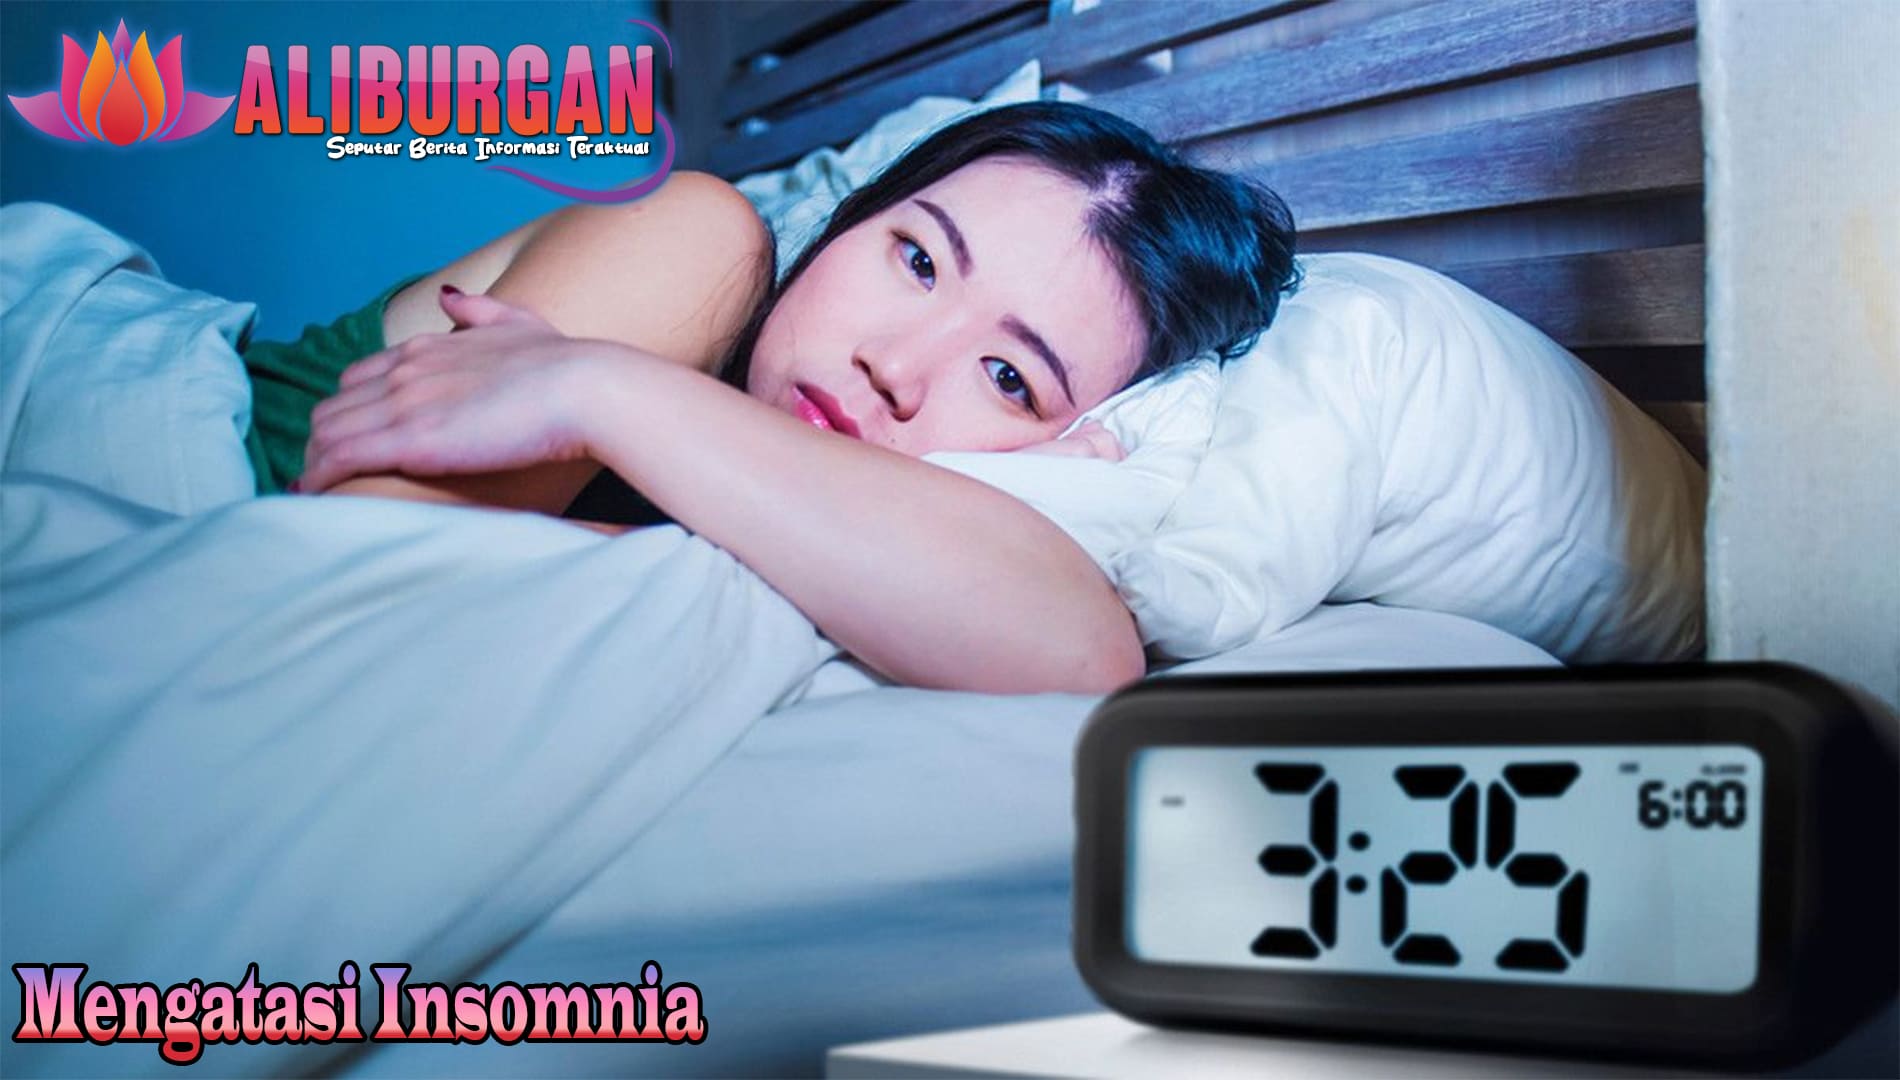 Strategi Efektif untuk Mengatasi Insomnia dan Memulihkan Kualitas Tidur Anda